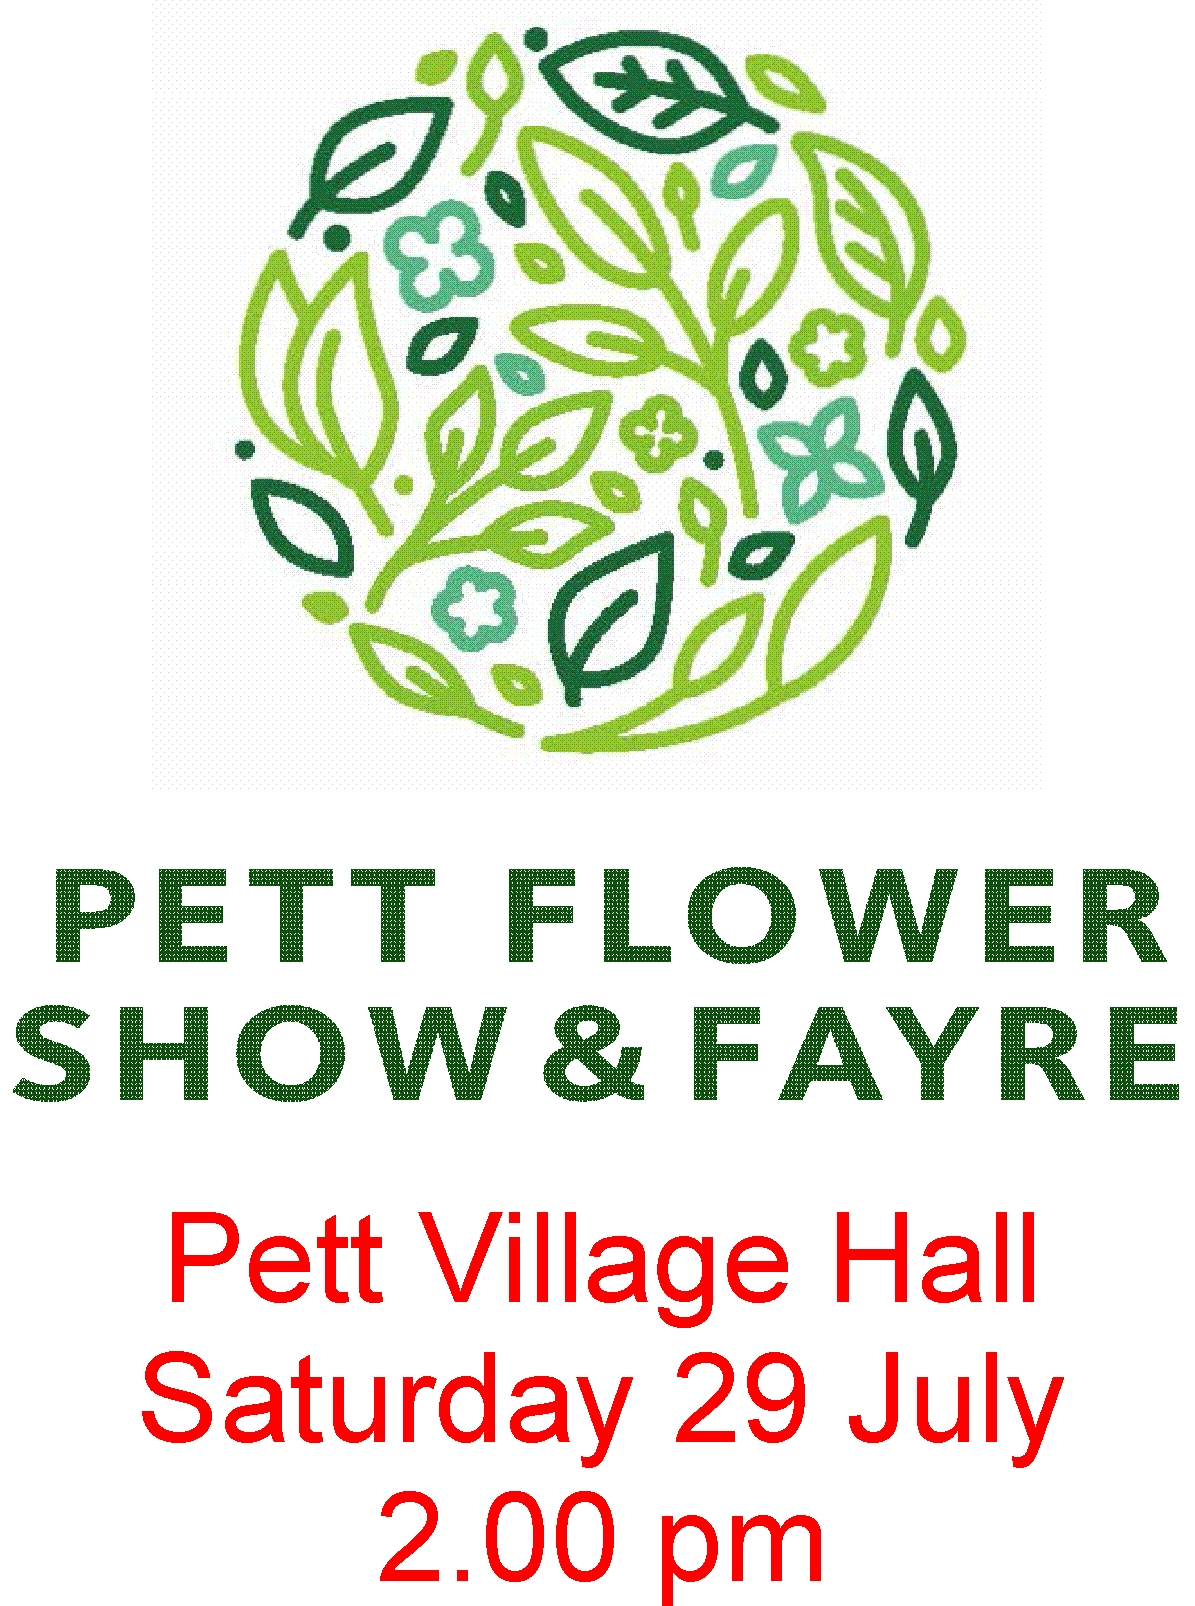 Flower Show Saturday 29th July 2pm Pett Villaeg hall